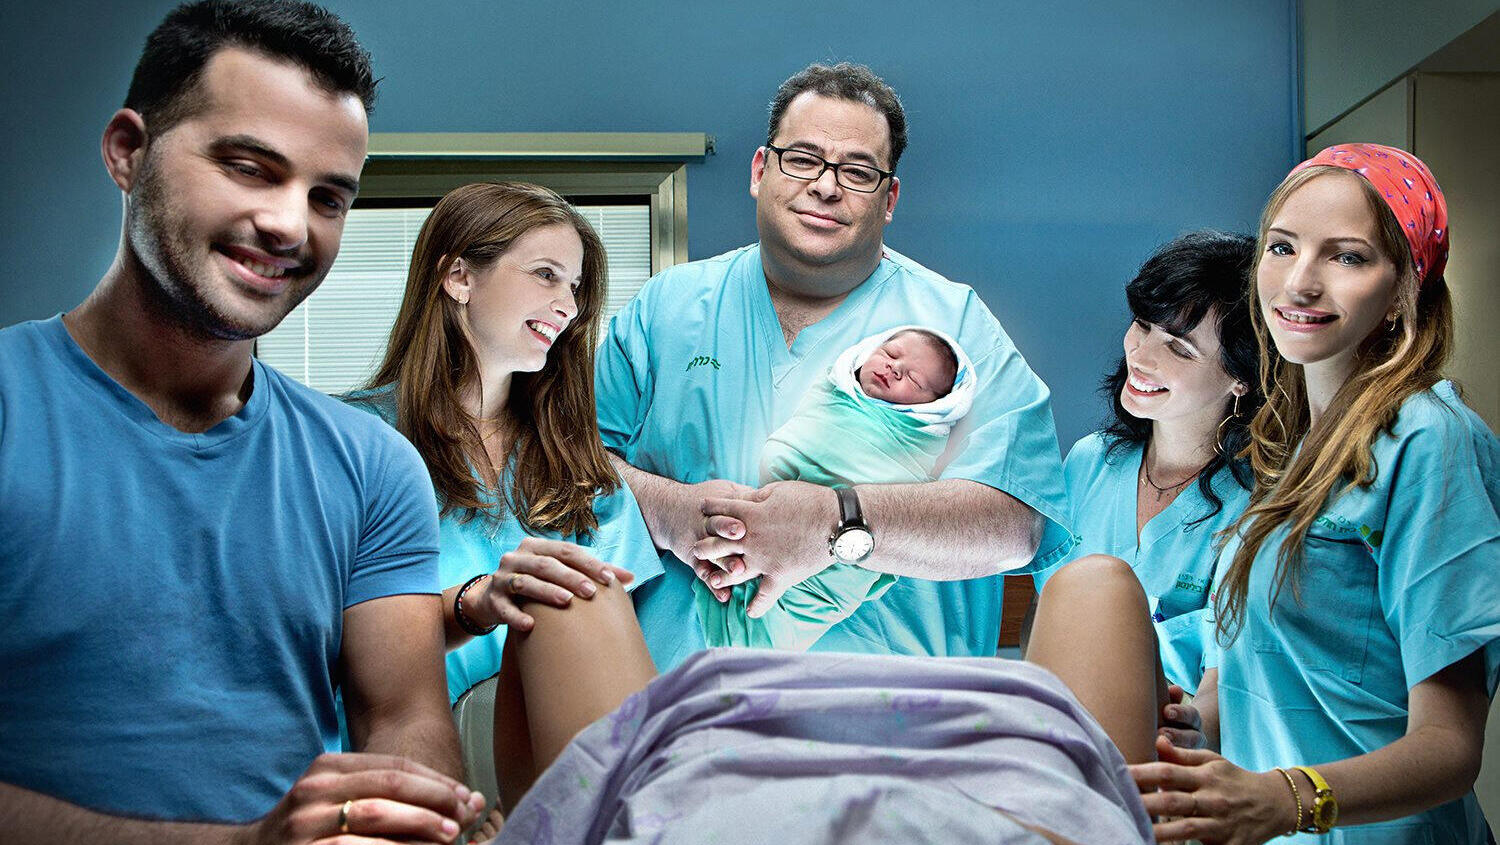 פנאי במרכז פרופסור יריב יוגב  אוחז ב תינוק  מתוך העונה השנייה של בייבי בום